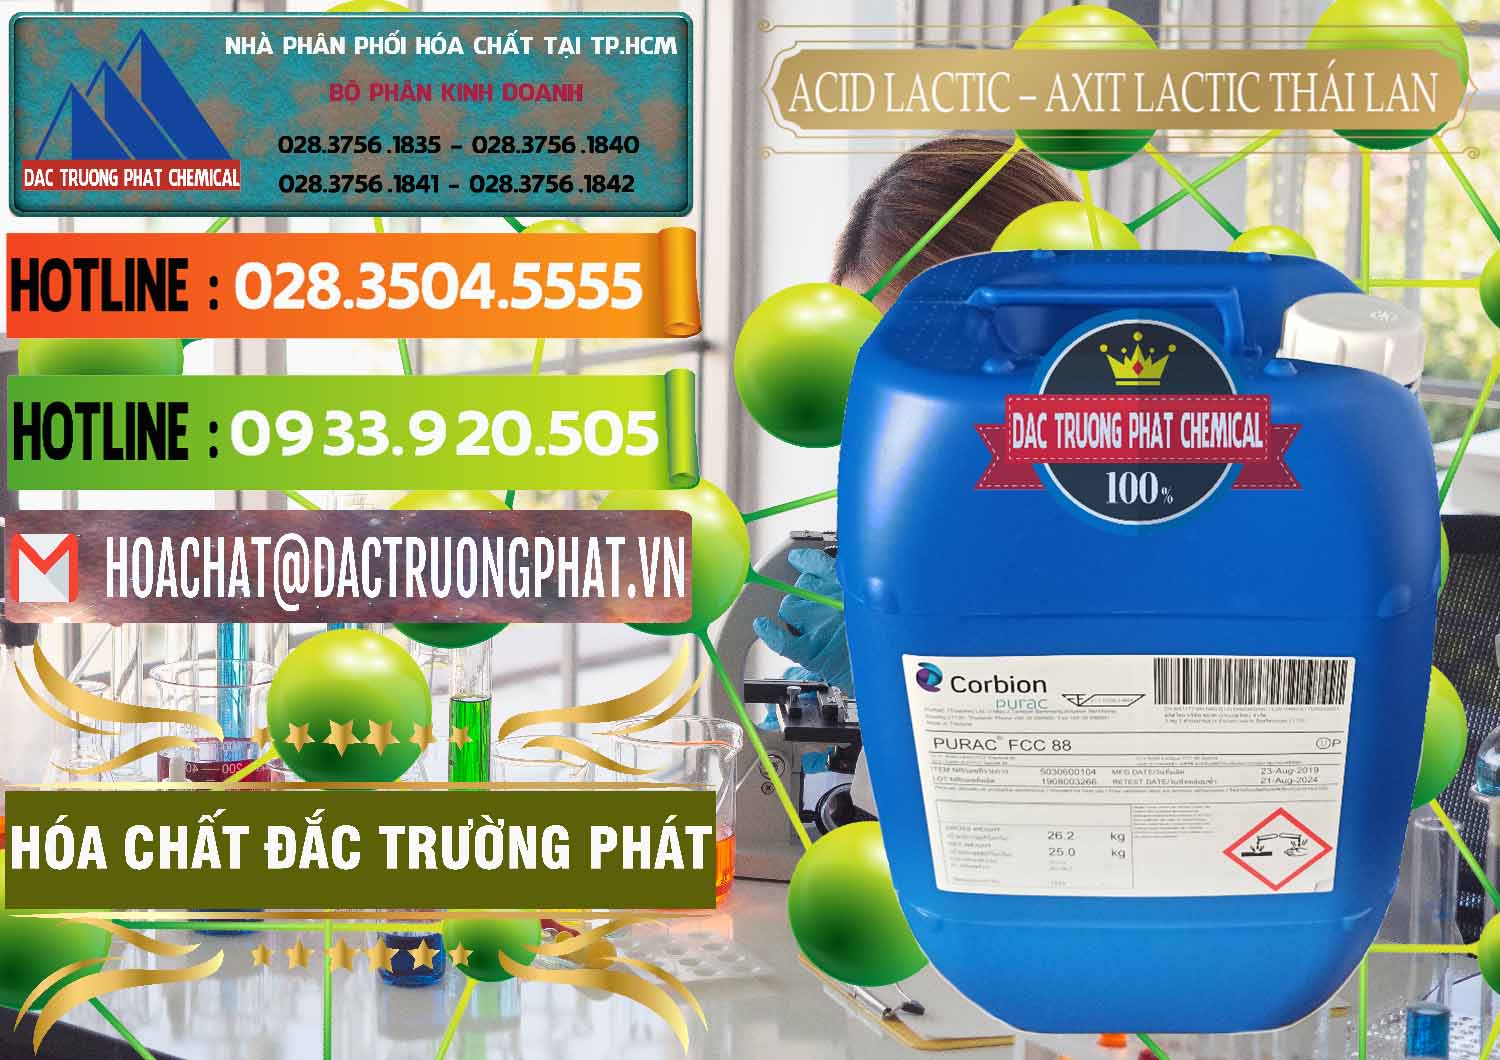 Công ty chuyên bán ( cung cấp ) Acid Lactic – Axit Lactic Thái Lan Purac FCC 88 - 0012 - Cty chuyên cung cấp _ bán hóa chất tại TP.HCM - cungcaphoachat.com.vn